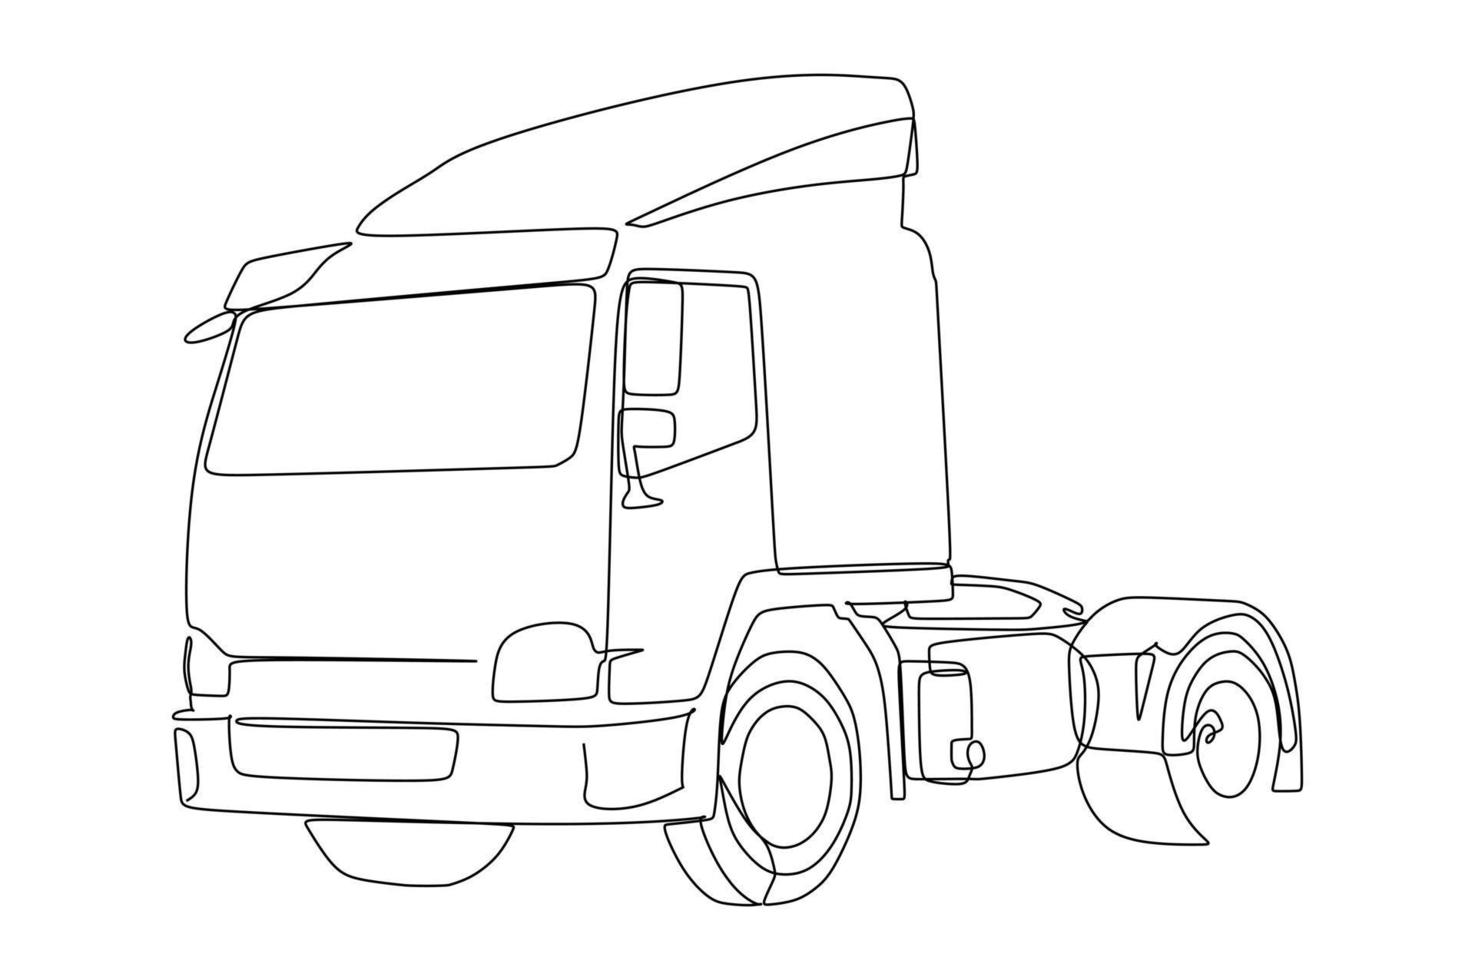 disegno continuo di una linea della testa del camion. vettore